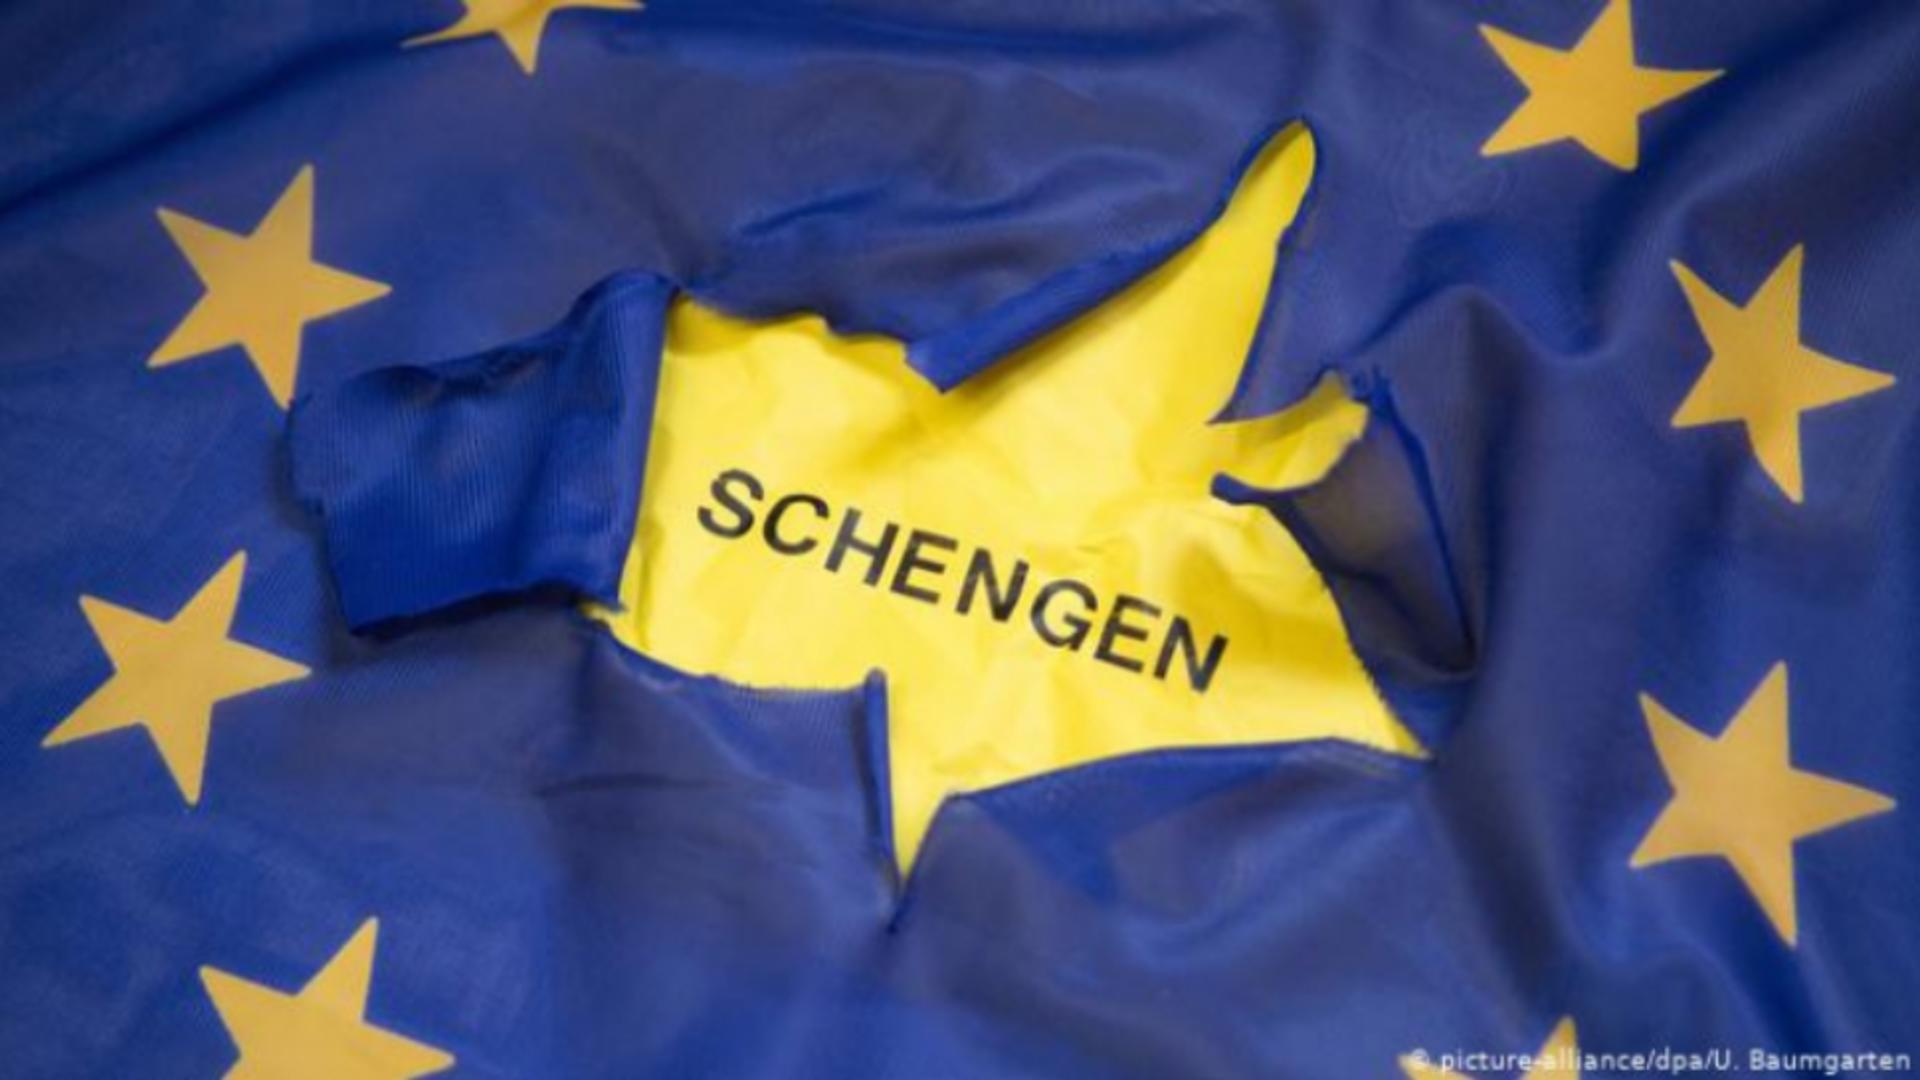 Austria și Olanda au votat împotriva aderării României și Bulgariei la Schengen